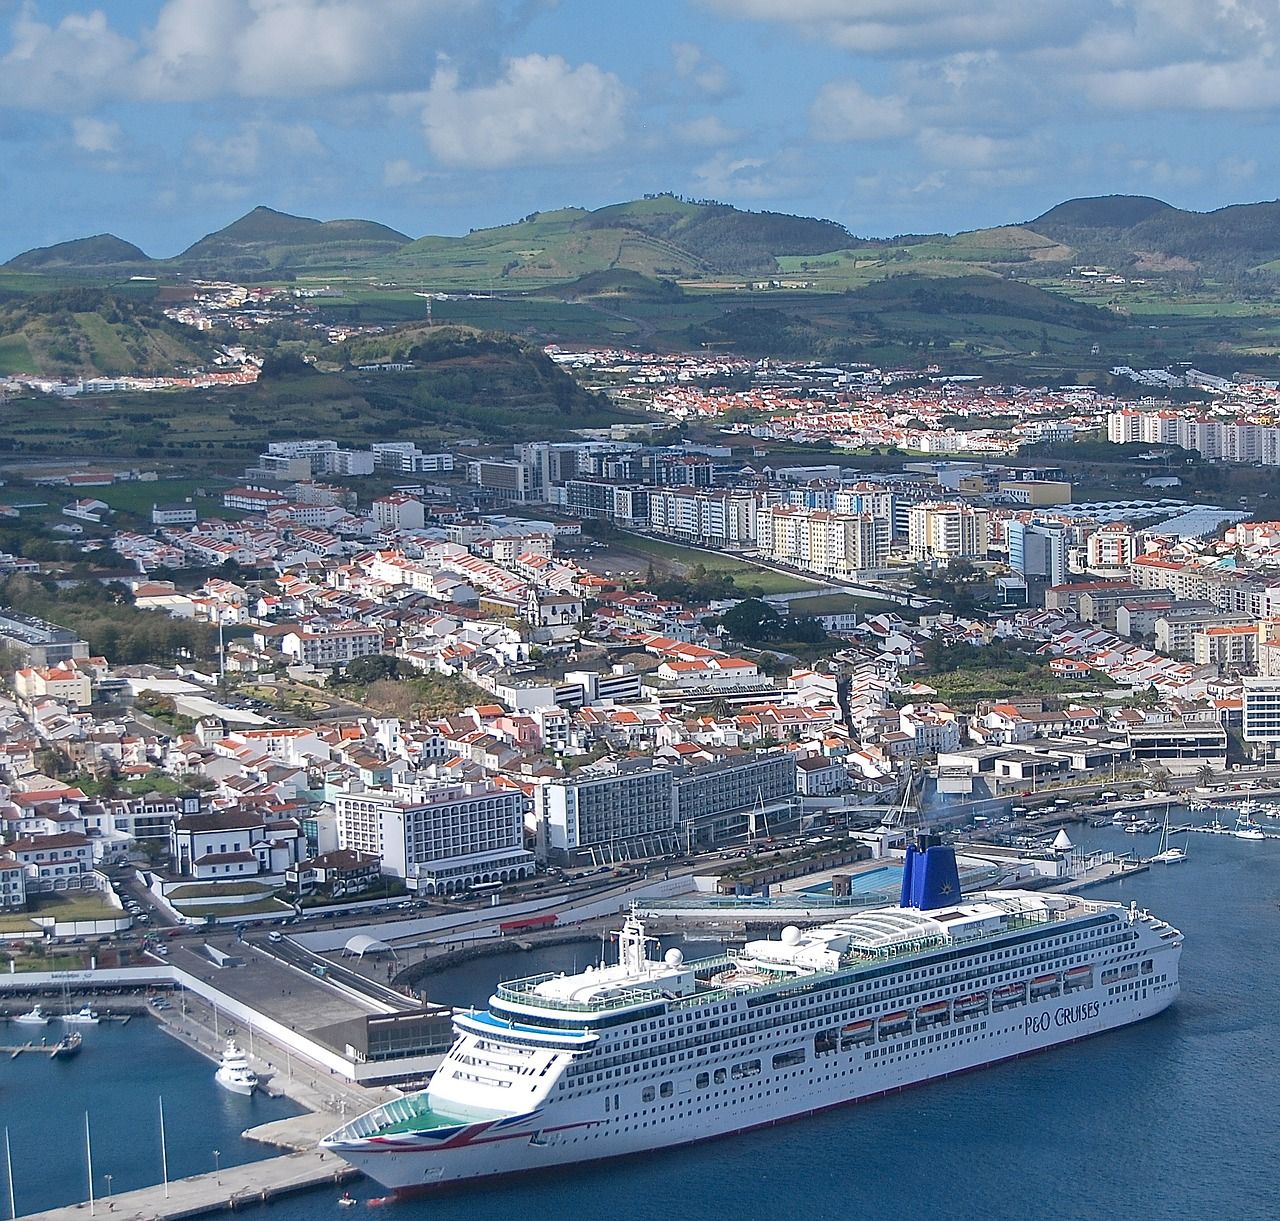 Aerial view of cruise ship at Ponta Delgada